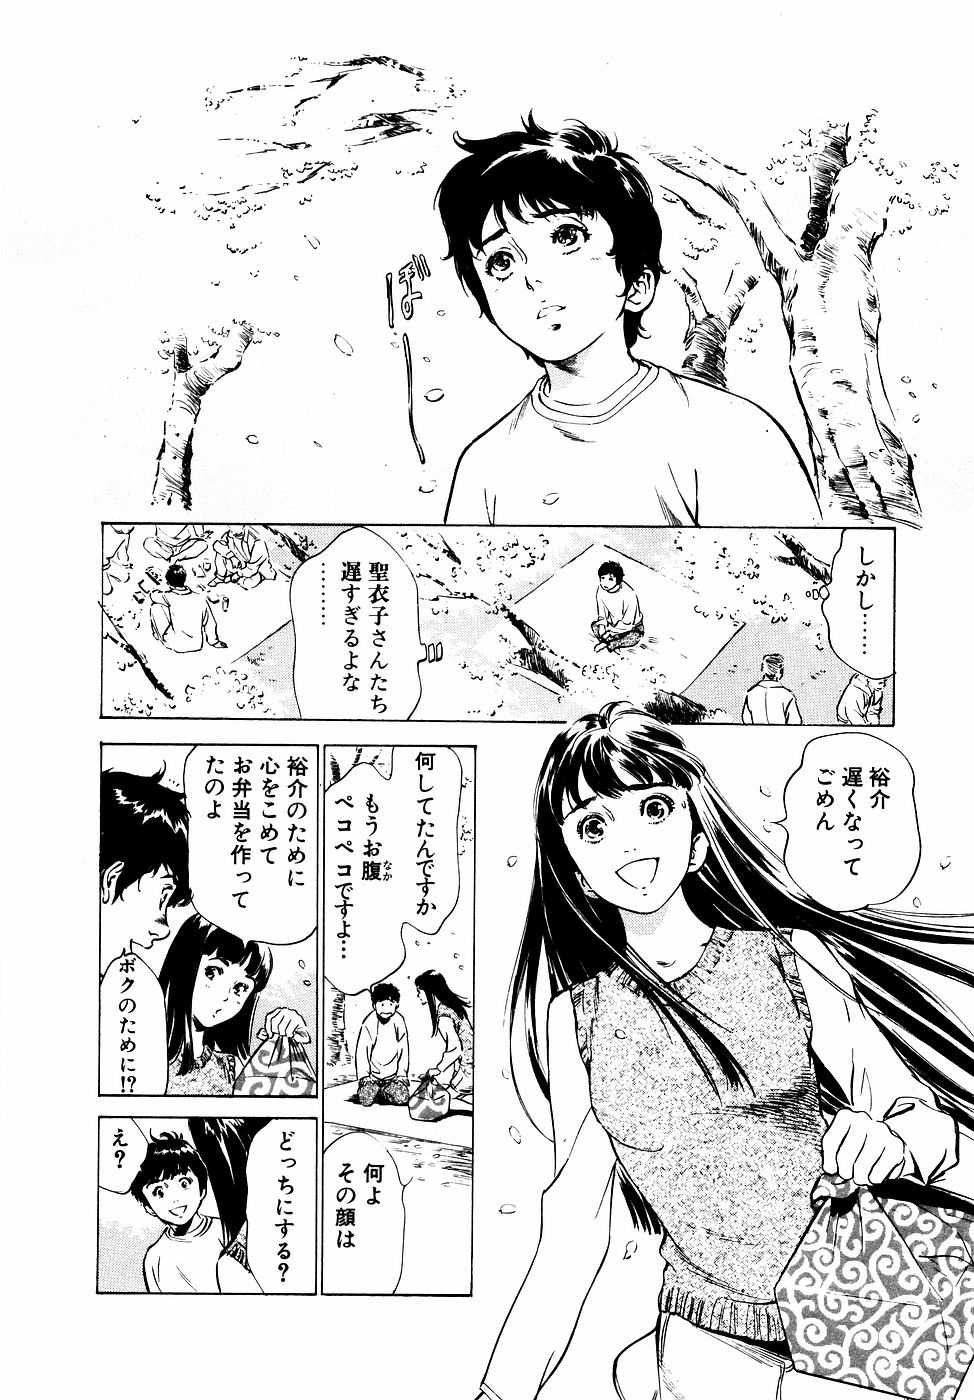 [Kaoru Hazuki] Antique Romantic Vol.2 Otakara Kaen Pen [八月薫] アンチックロマンチック Vol.2 お宝花園編